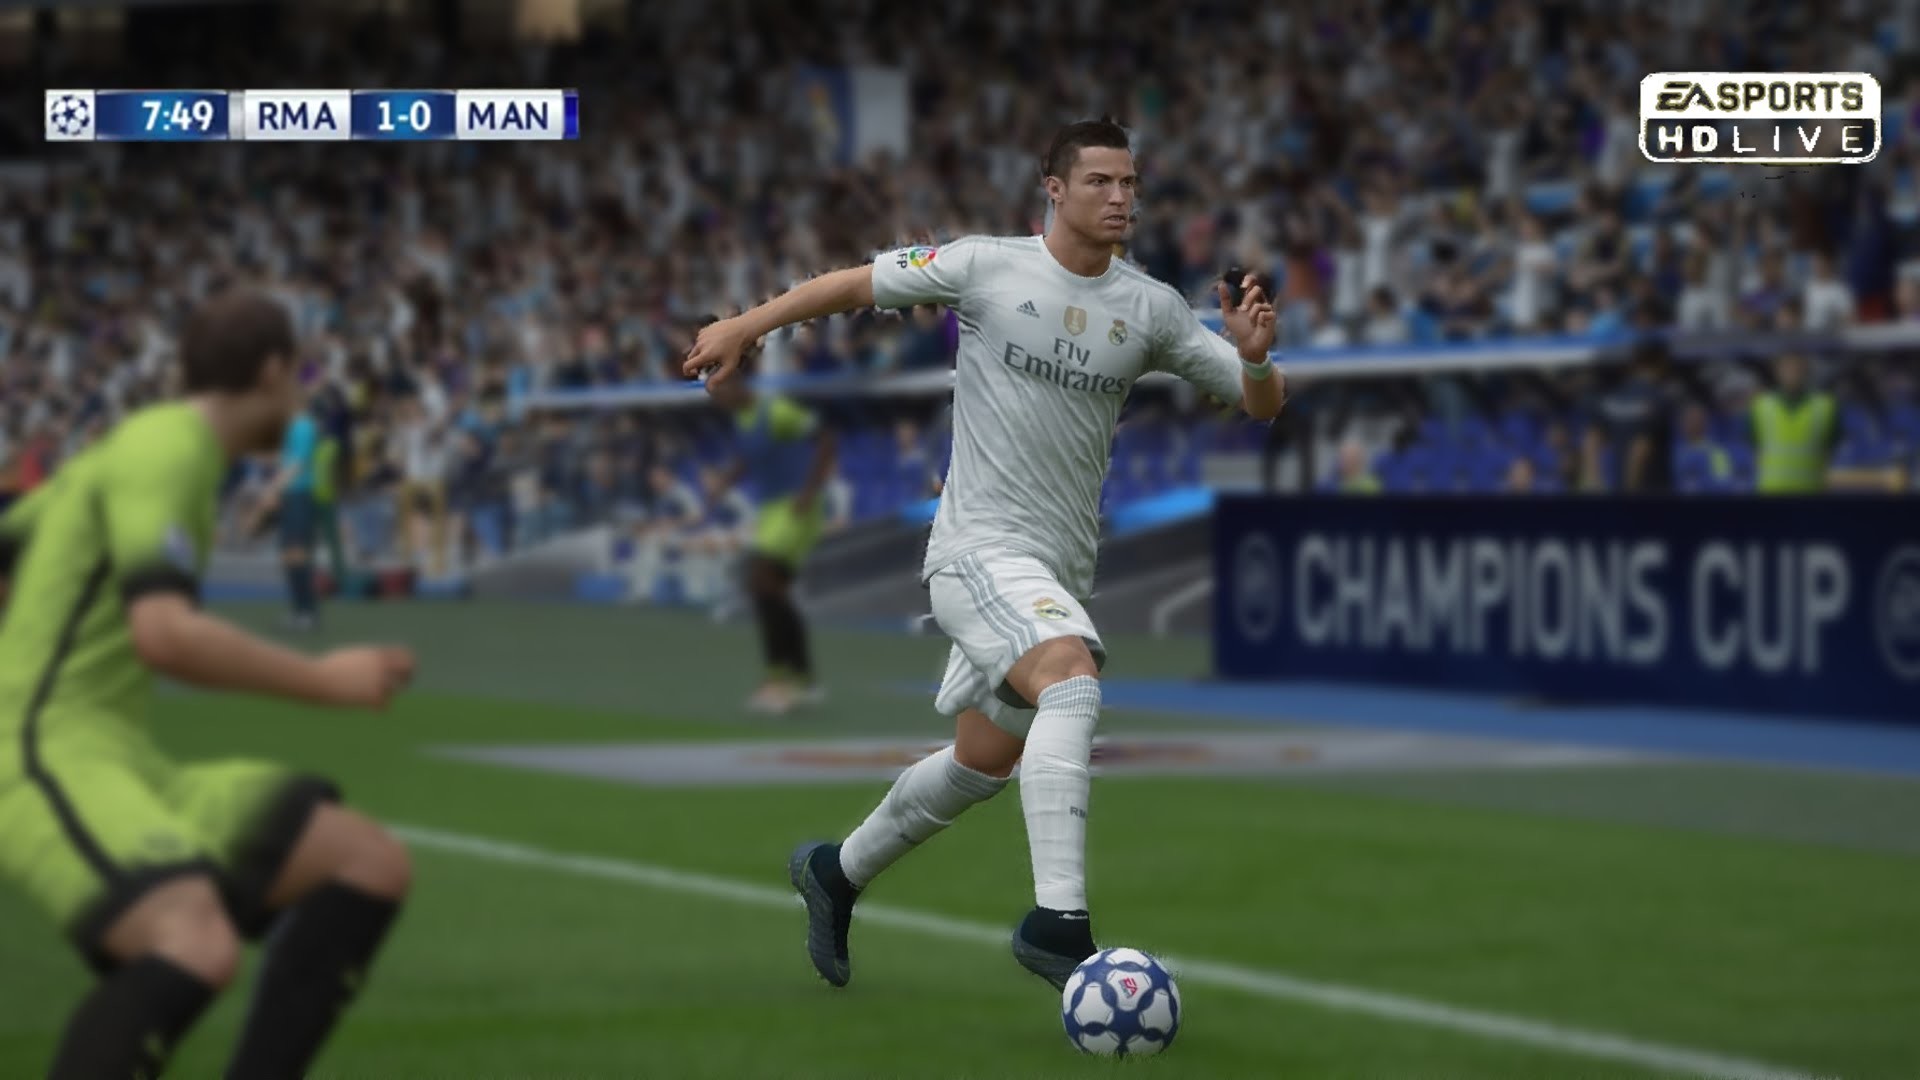 1920x1080 FIFA 16 PREDICTS: Cristiano Ronaldo vs Manchester City (Home) - by Pirelli7  - YouTube